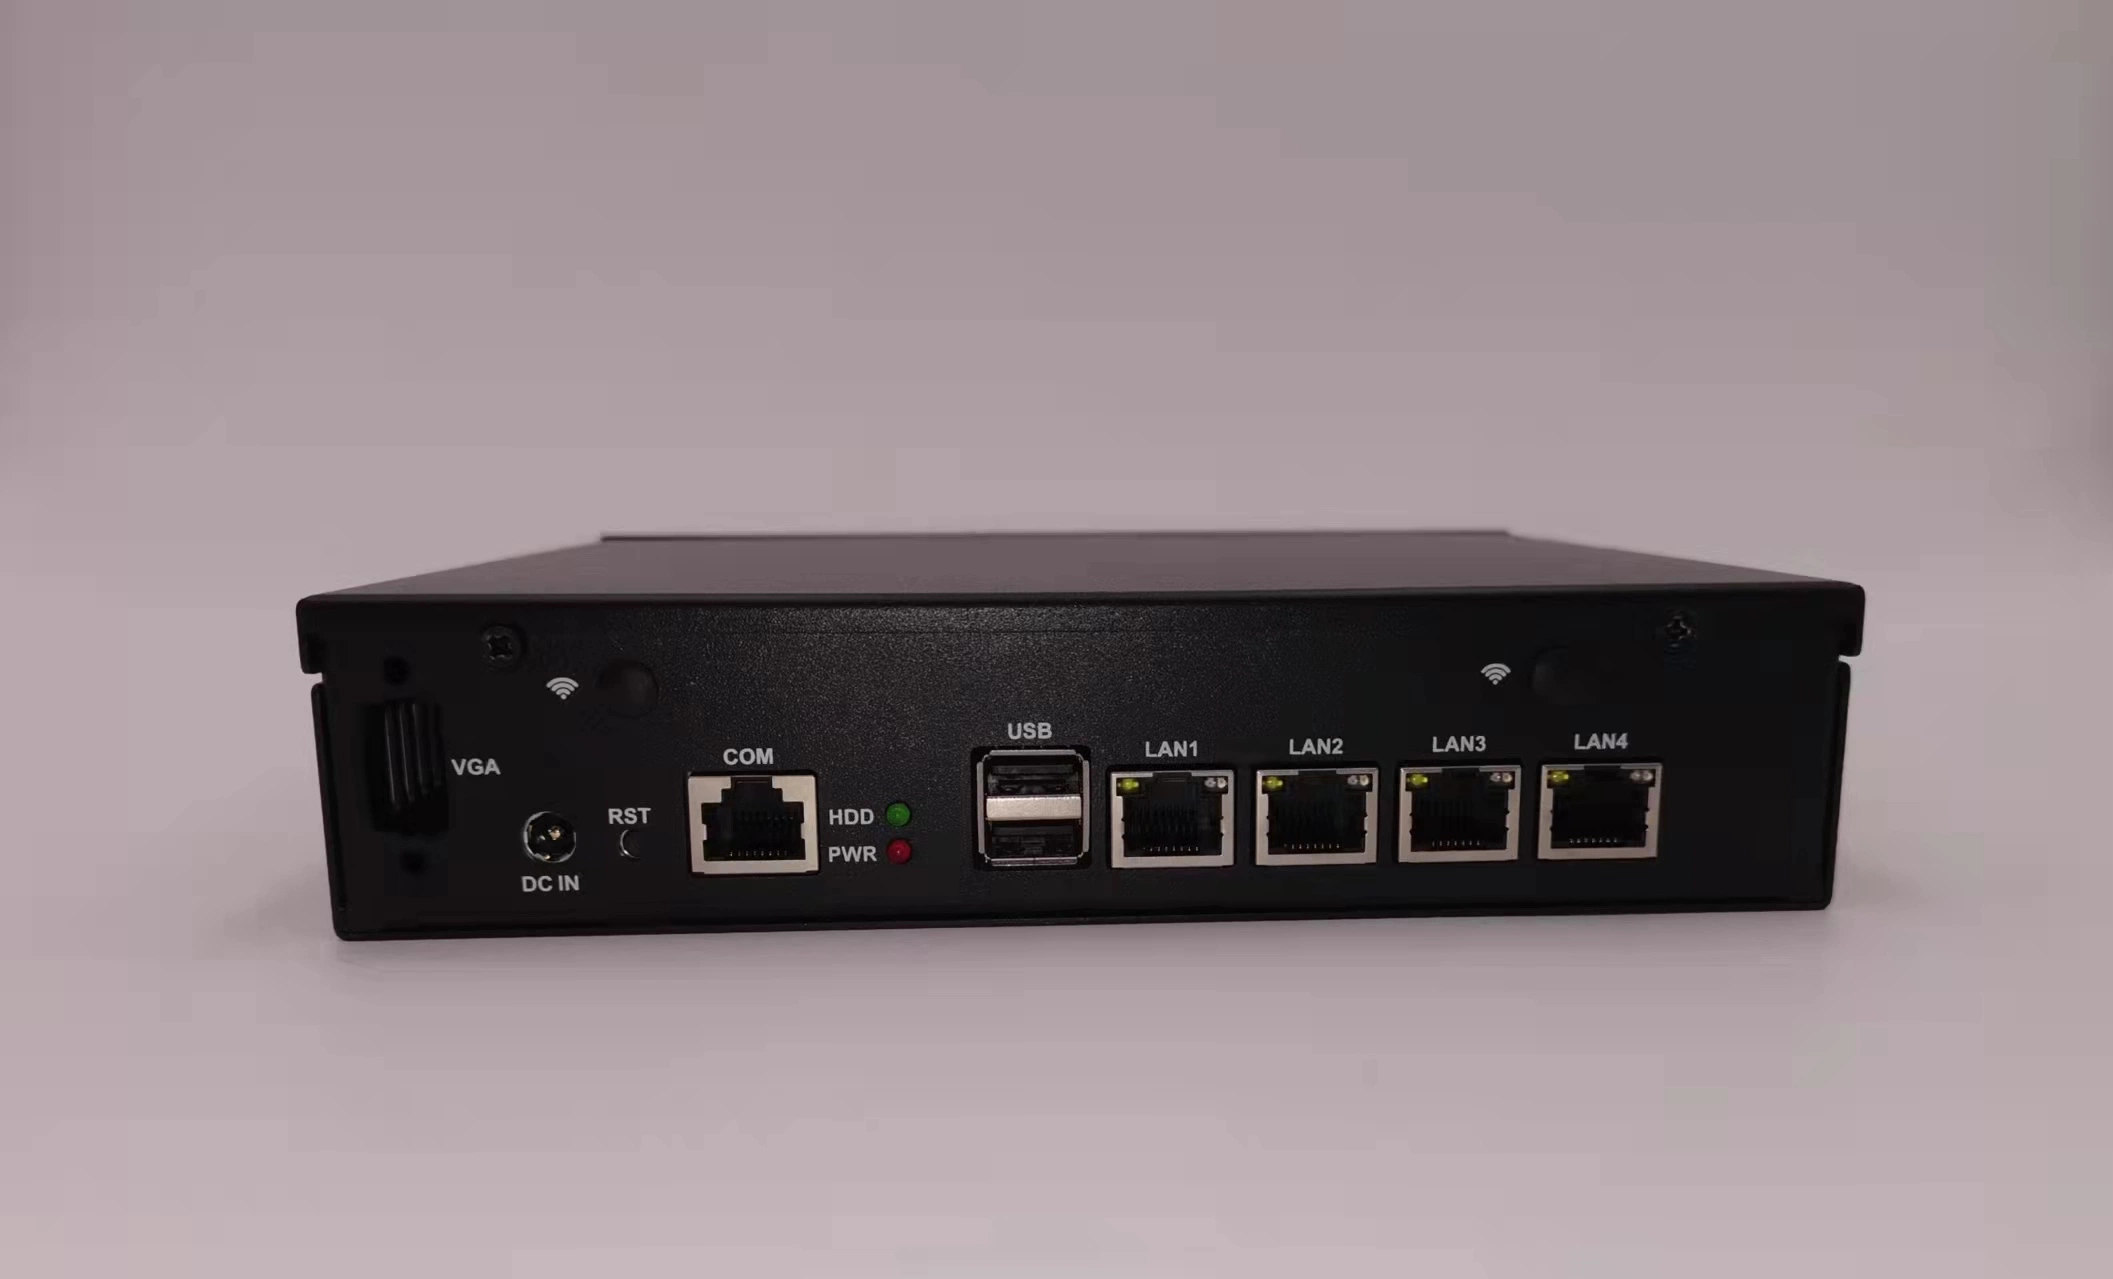 Firewall sin ventilador Intel J1900/J4125 4 LAN Desktop, Firewall Barebone Mini PC Router pfsense